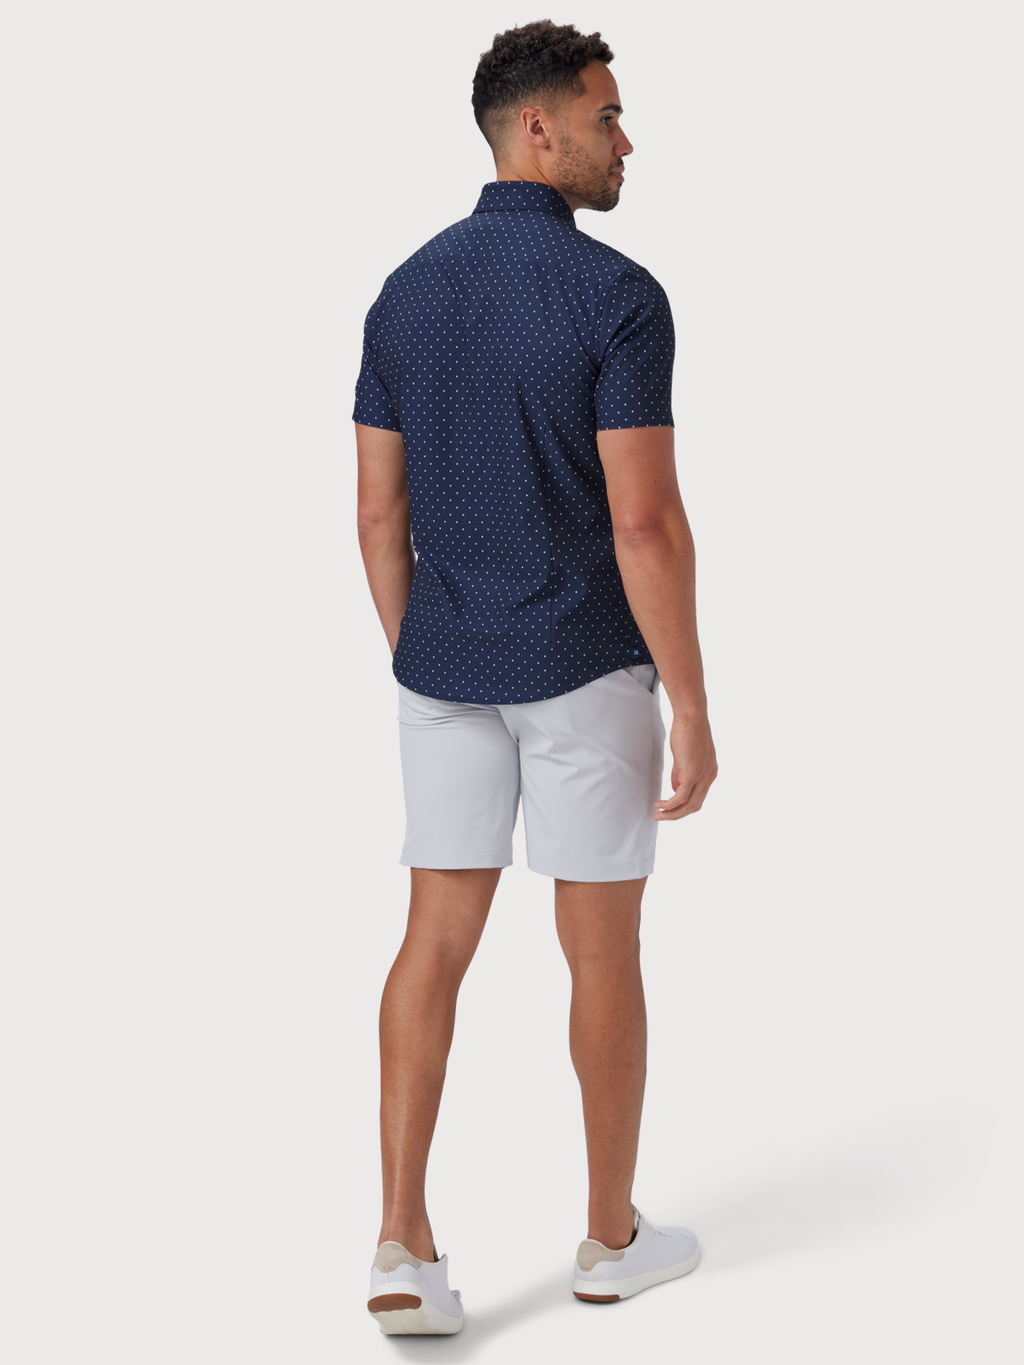 Leeward Short Sleeve Shirt in Navy Polka Dot